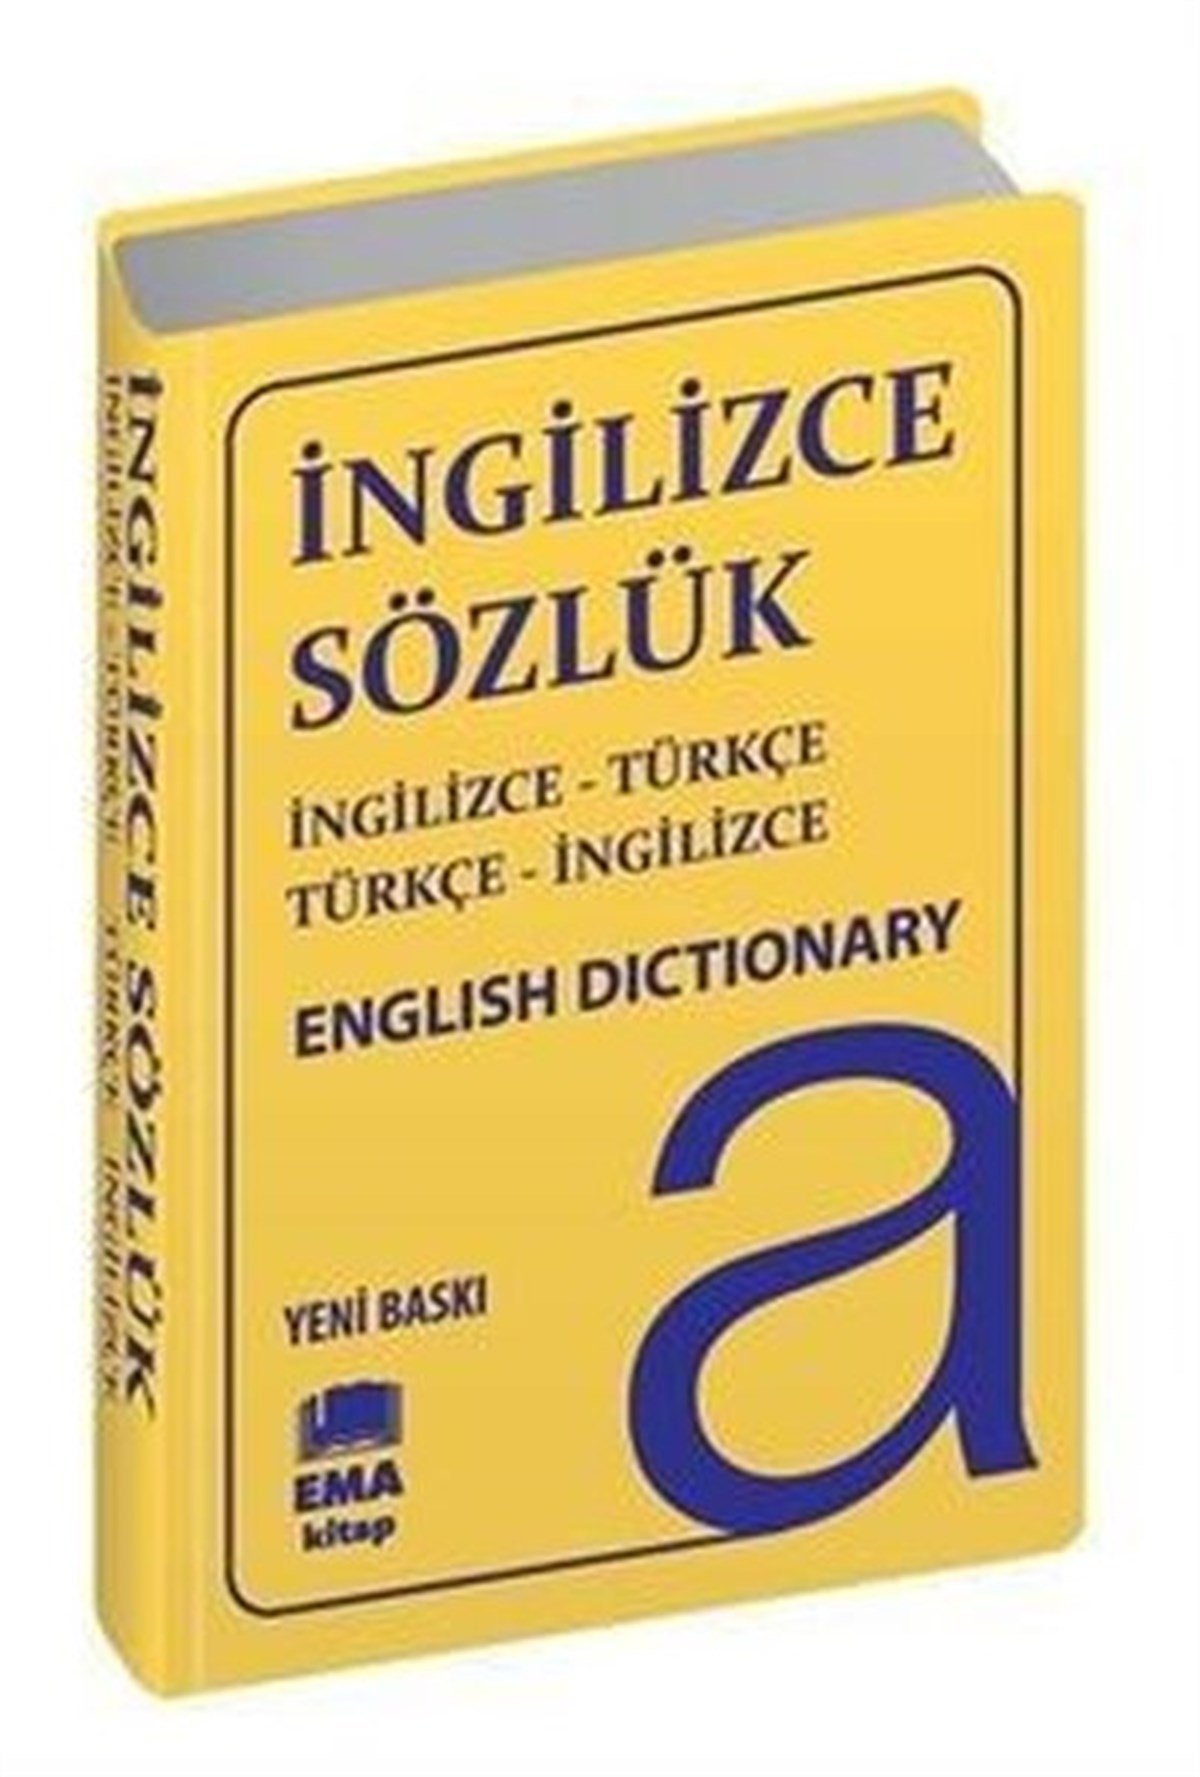 İngilizce-Türkçe/Türkçe-İngilizce Sözlük - Biala Kapak | Köln Kütüphane